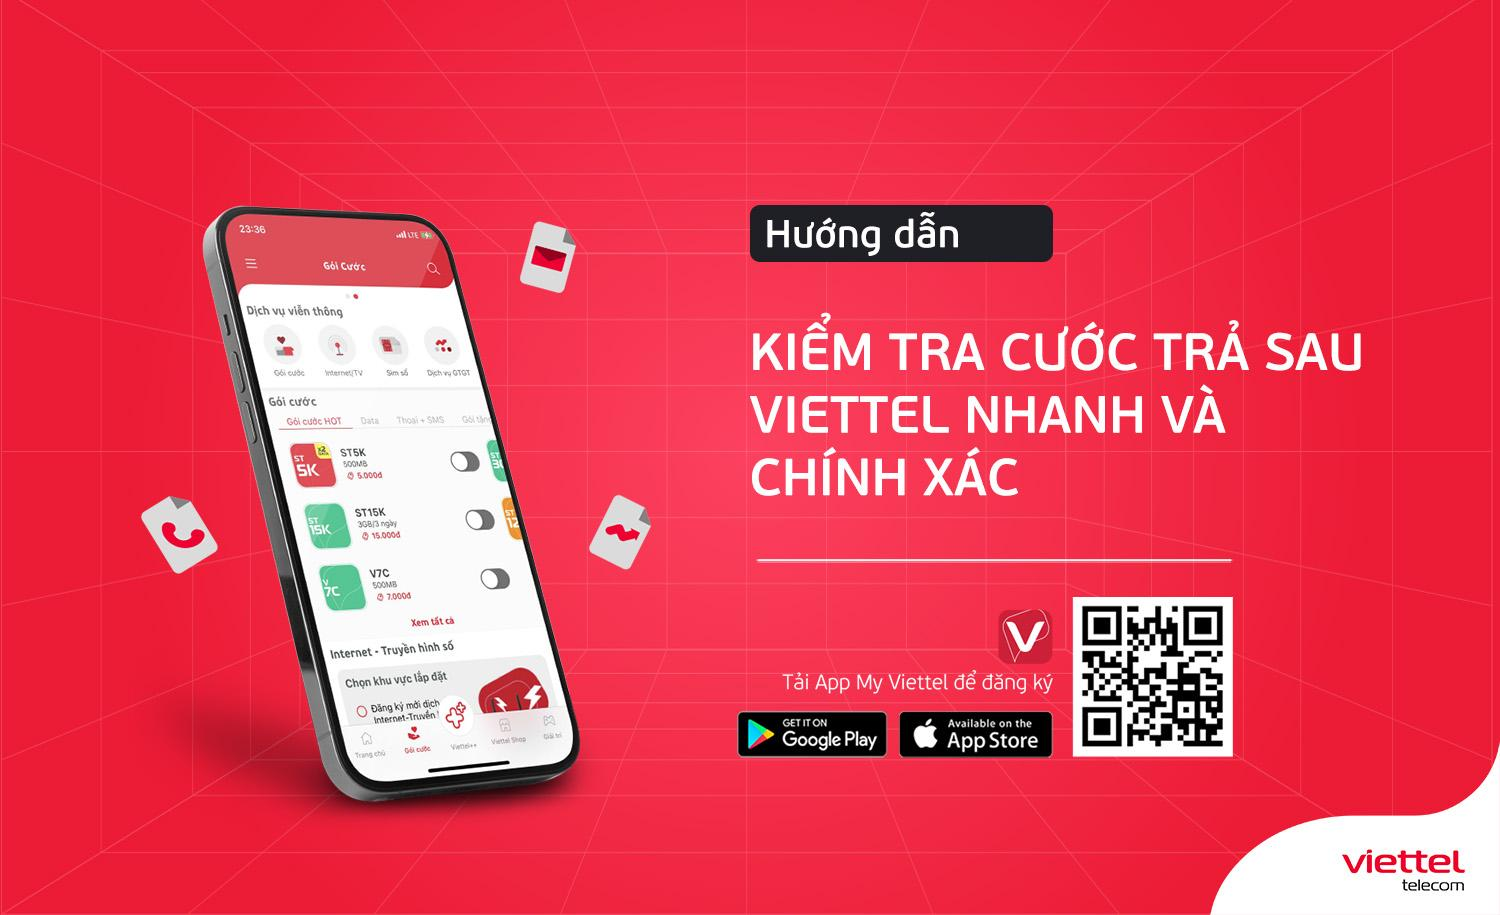 Viettel Telecom: Vietnamese là nhà cung cấp dịch vụ viễn thông lớn nhất tại Việt Nam, đảm bảo sự phát triển bền vững và đáp ứng nhu cầu của người dân. Với các dịch vụ hoàn toàn chất lượng và nhân viên chuyên nghiệp, Viettel Telecom đang dần khẳng định vị thế của mình trên thị trường. Hãy xem hình ảnh liên quan để tìm hiểu thêm về Viettel Telecom.